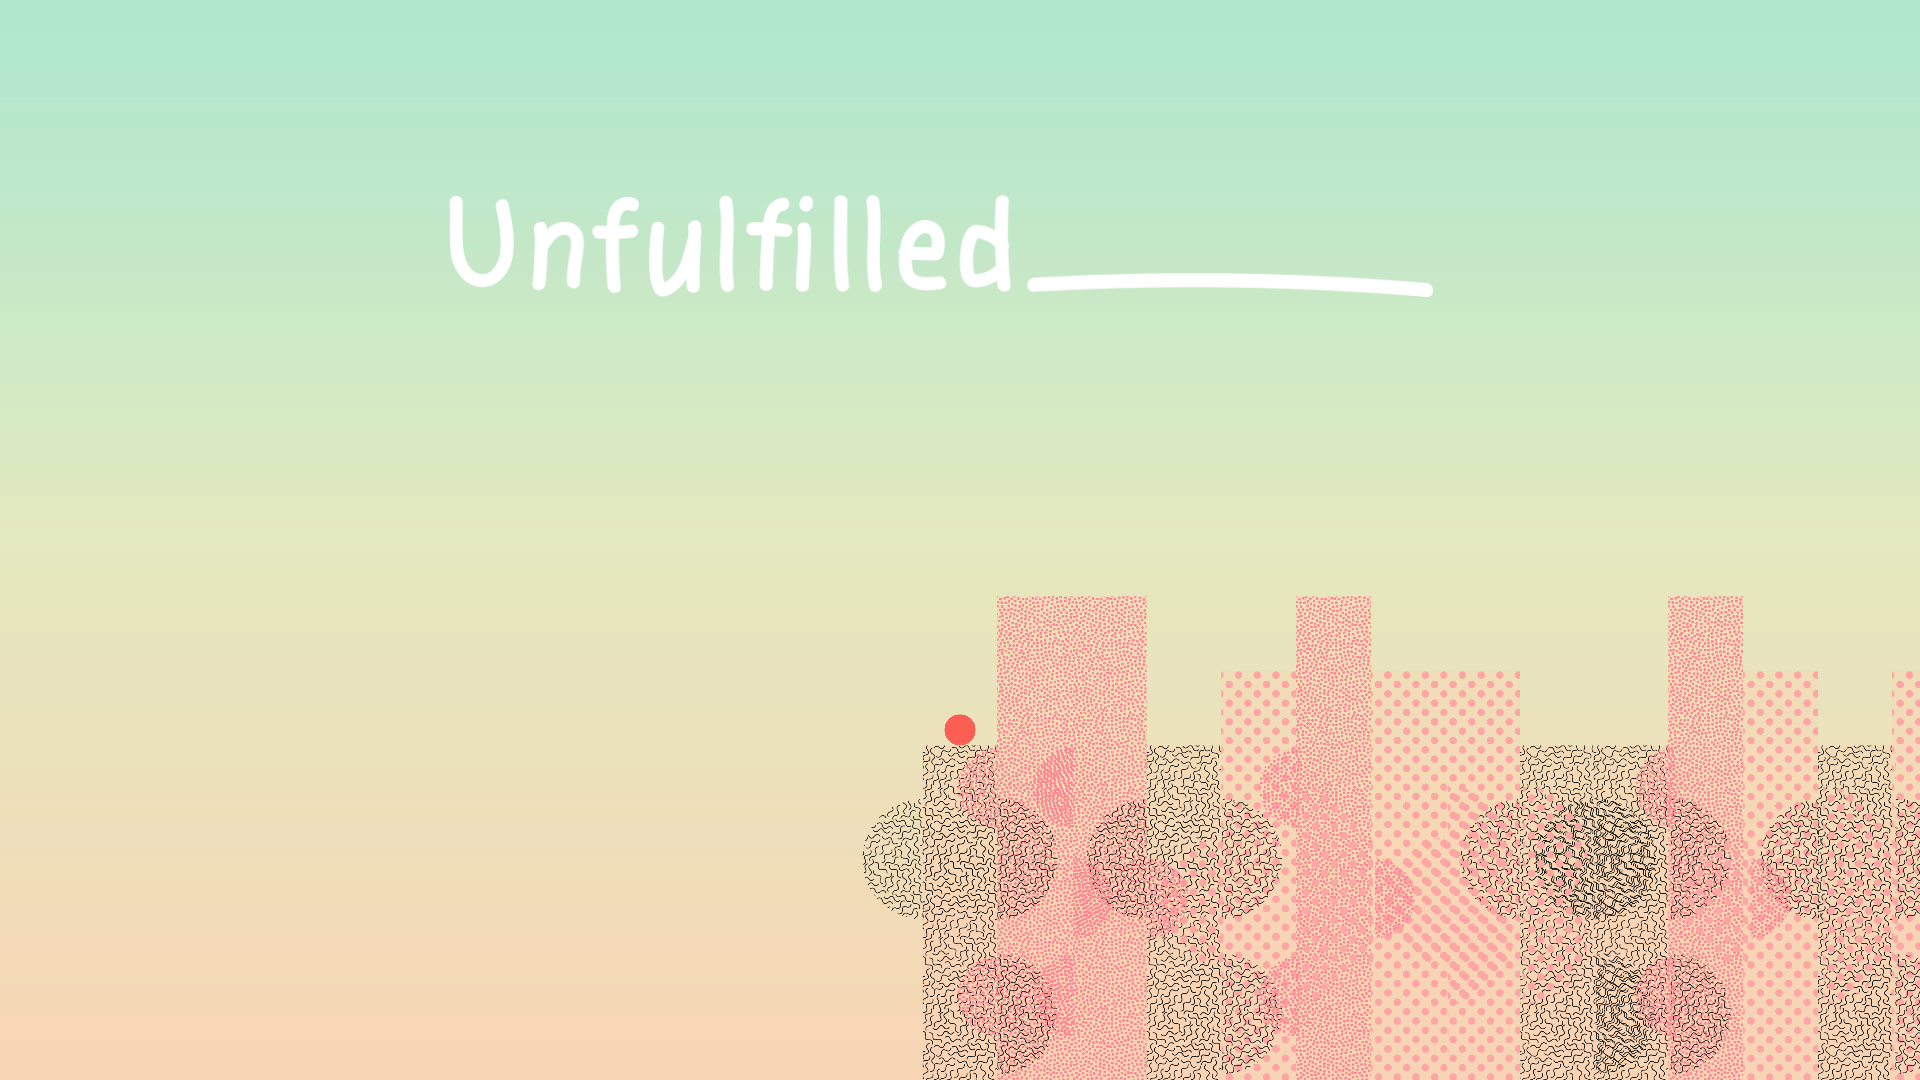 unfulfilled